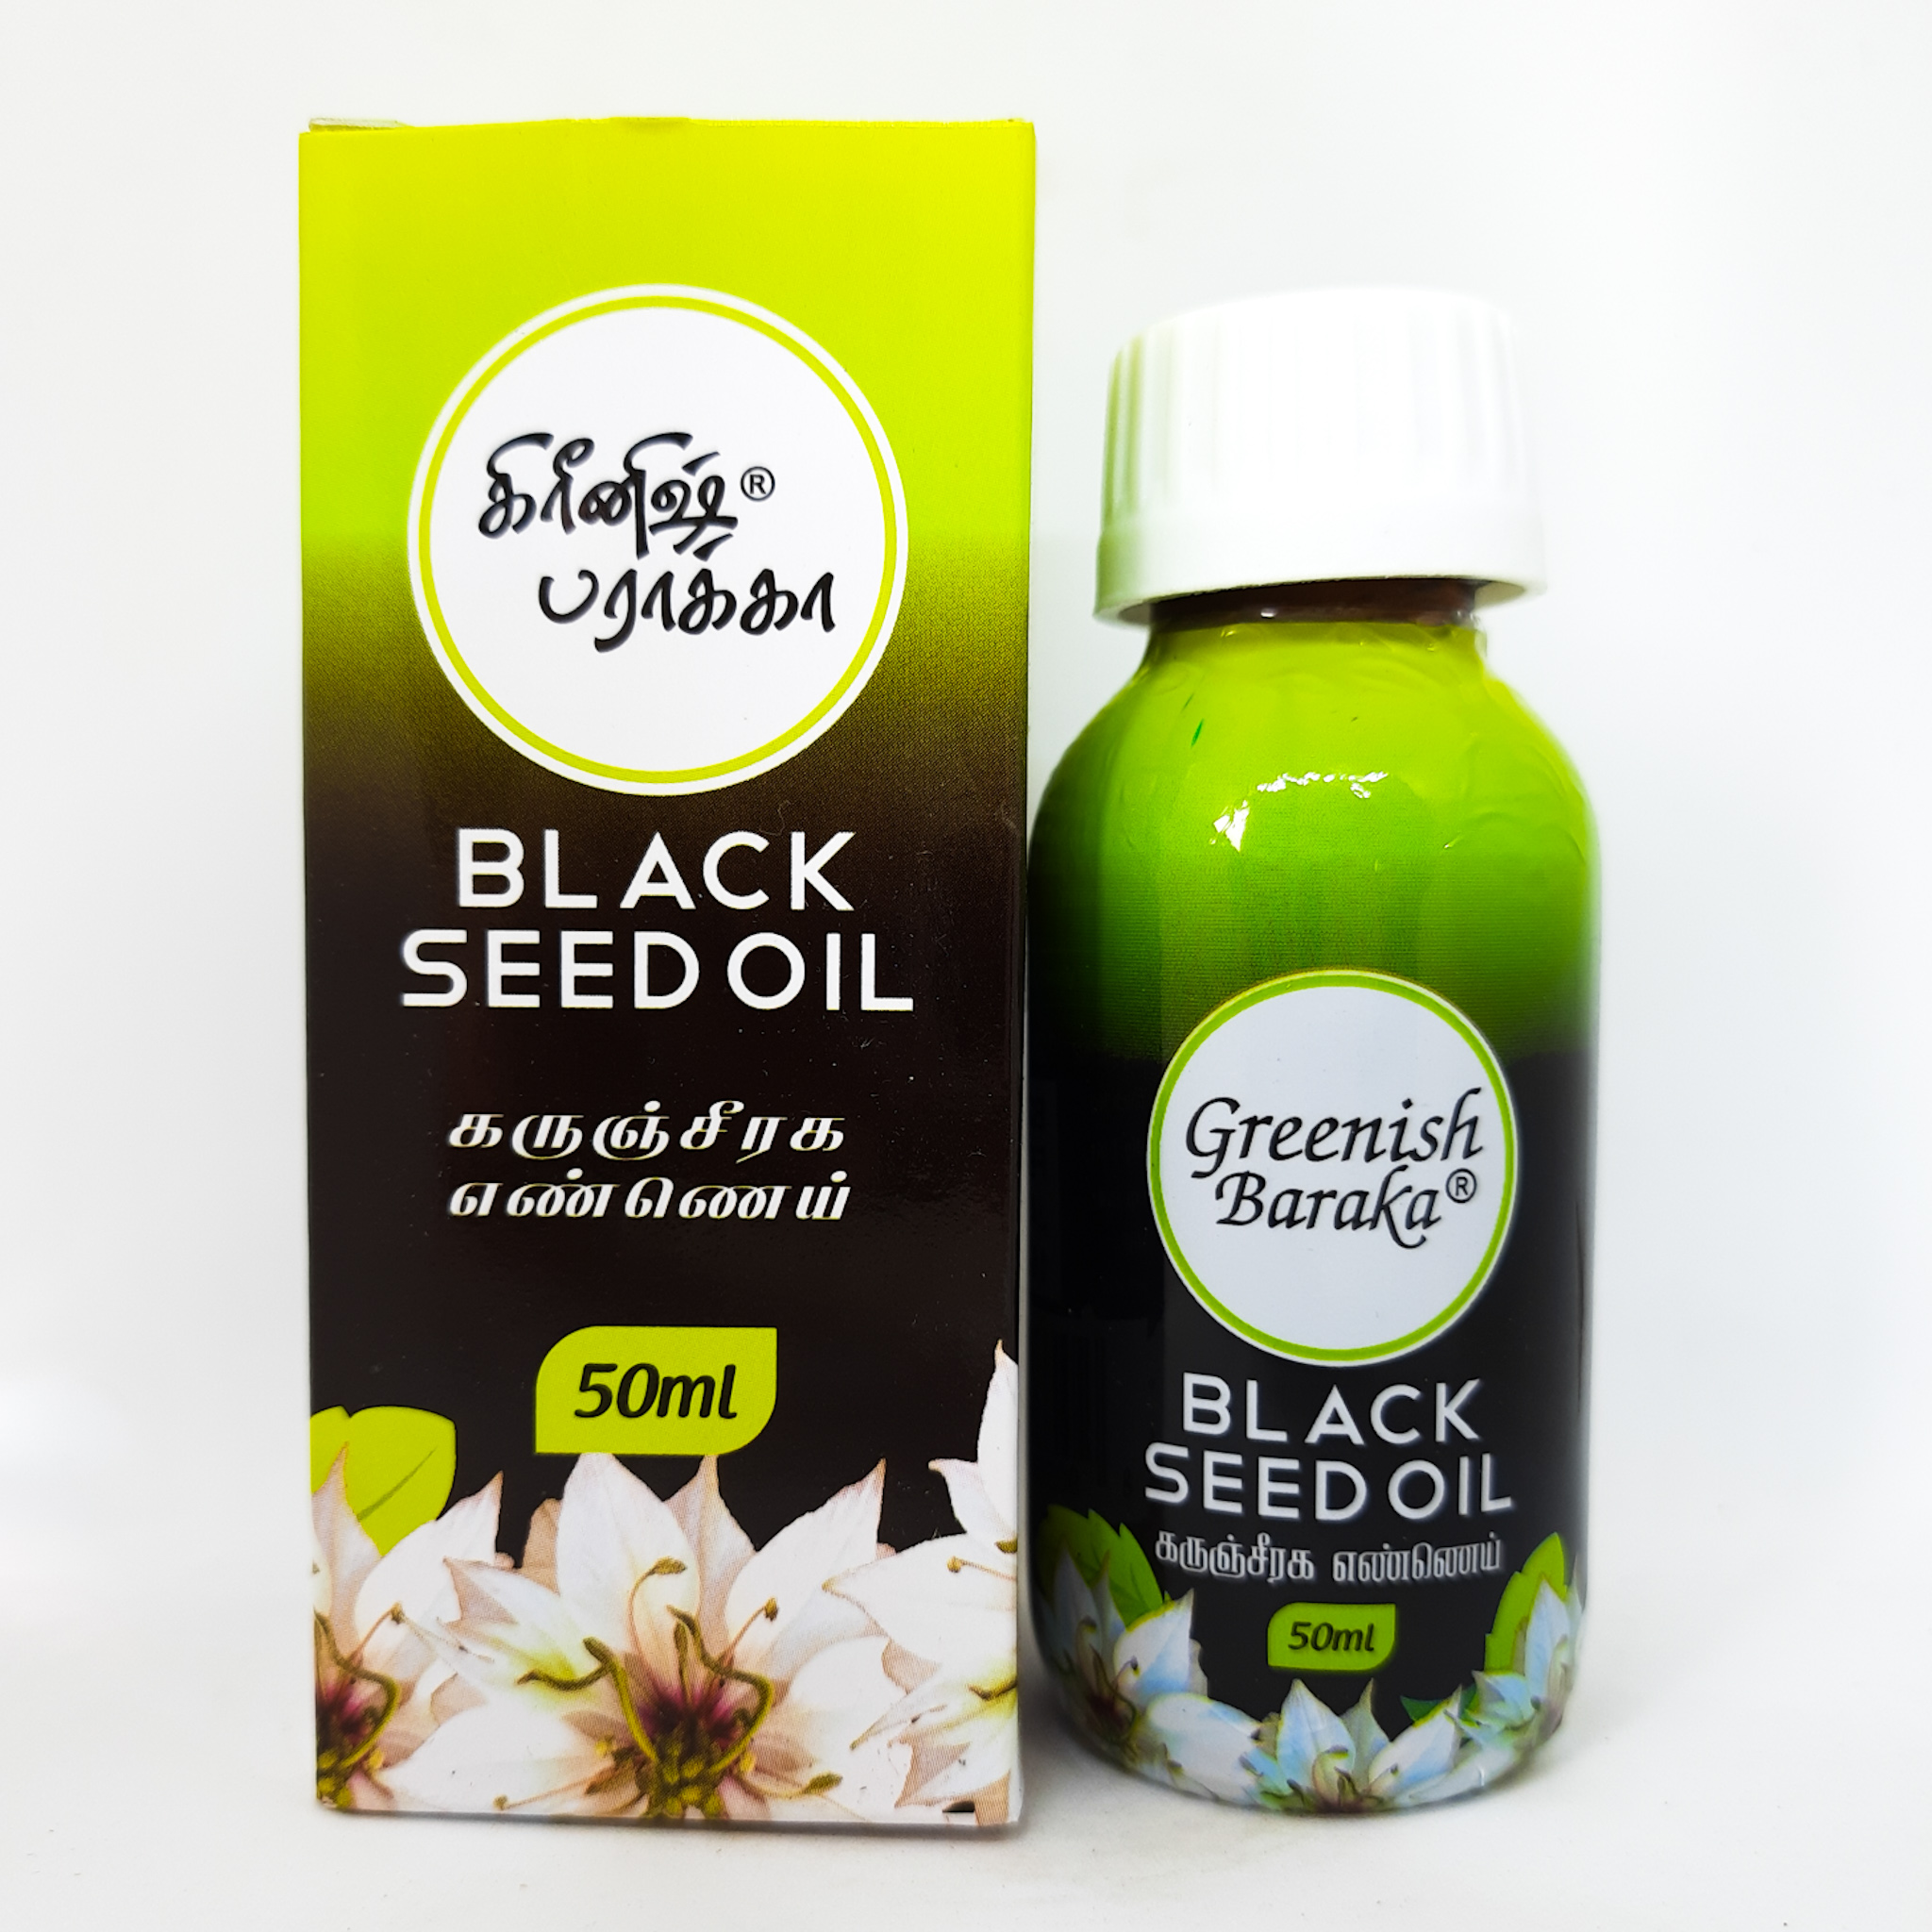 Black seed oil / karunjeeragam oil